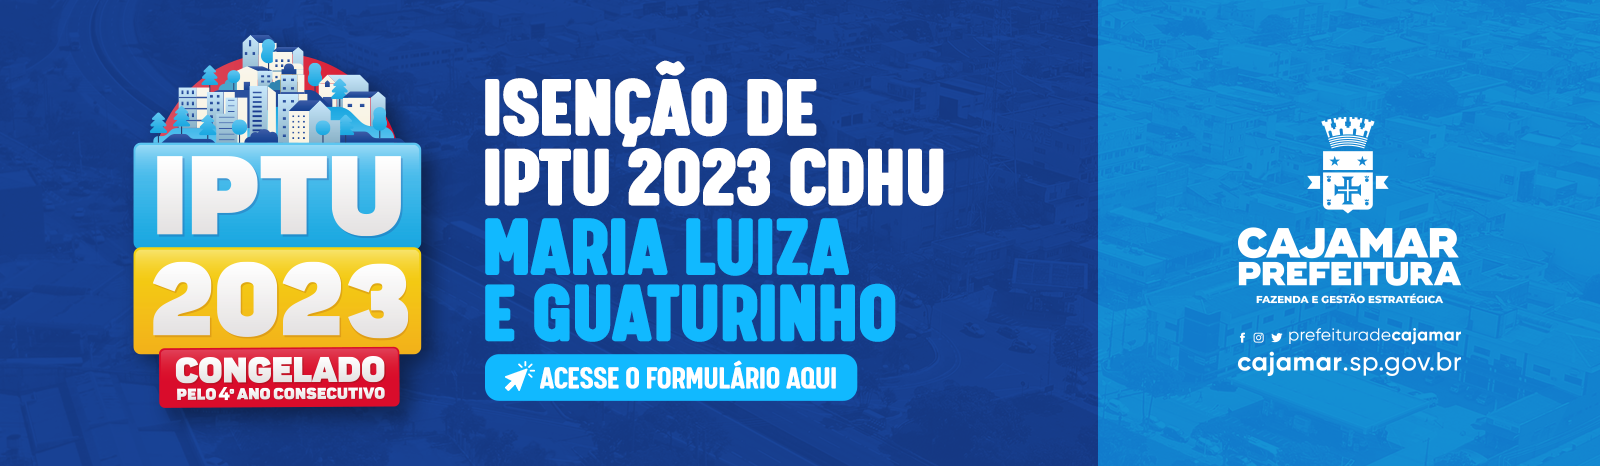 Isenção do IPTU do CDHU Maria Luiza e Guaturinho ocorrerá entre os dias 10 abril e 30 de junho